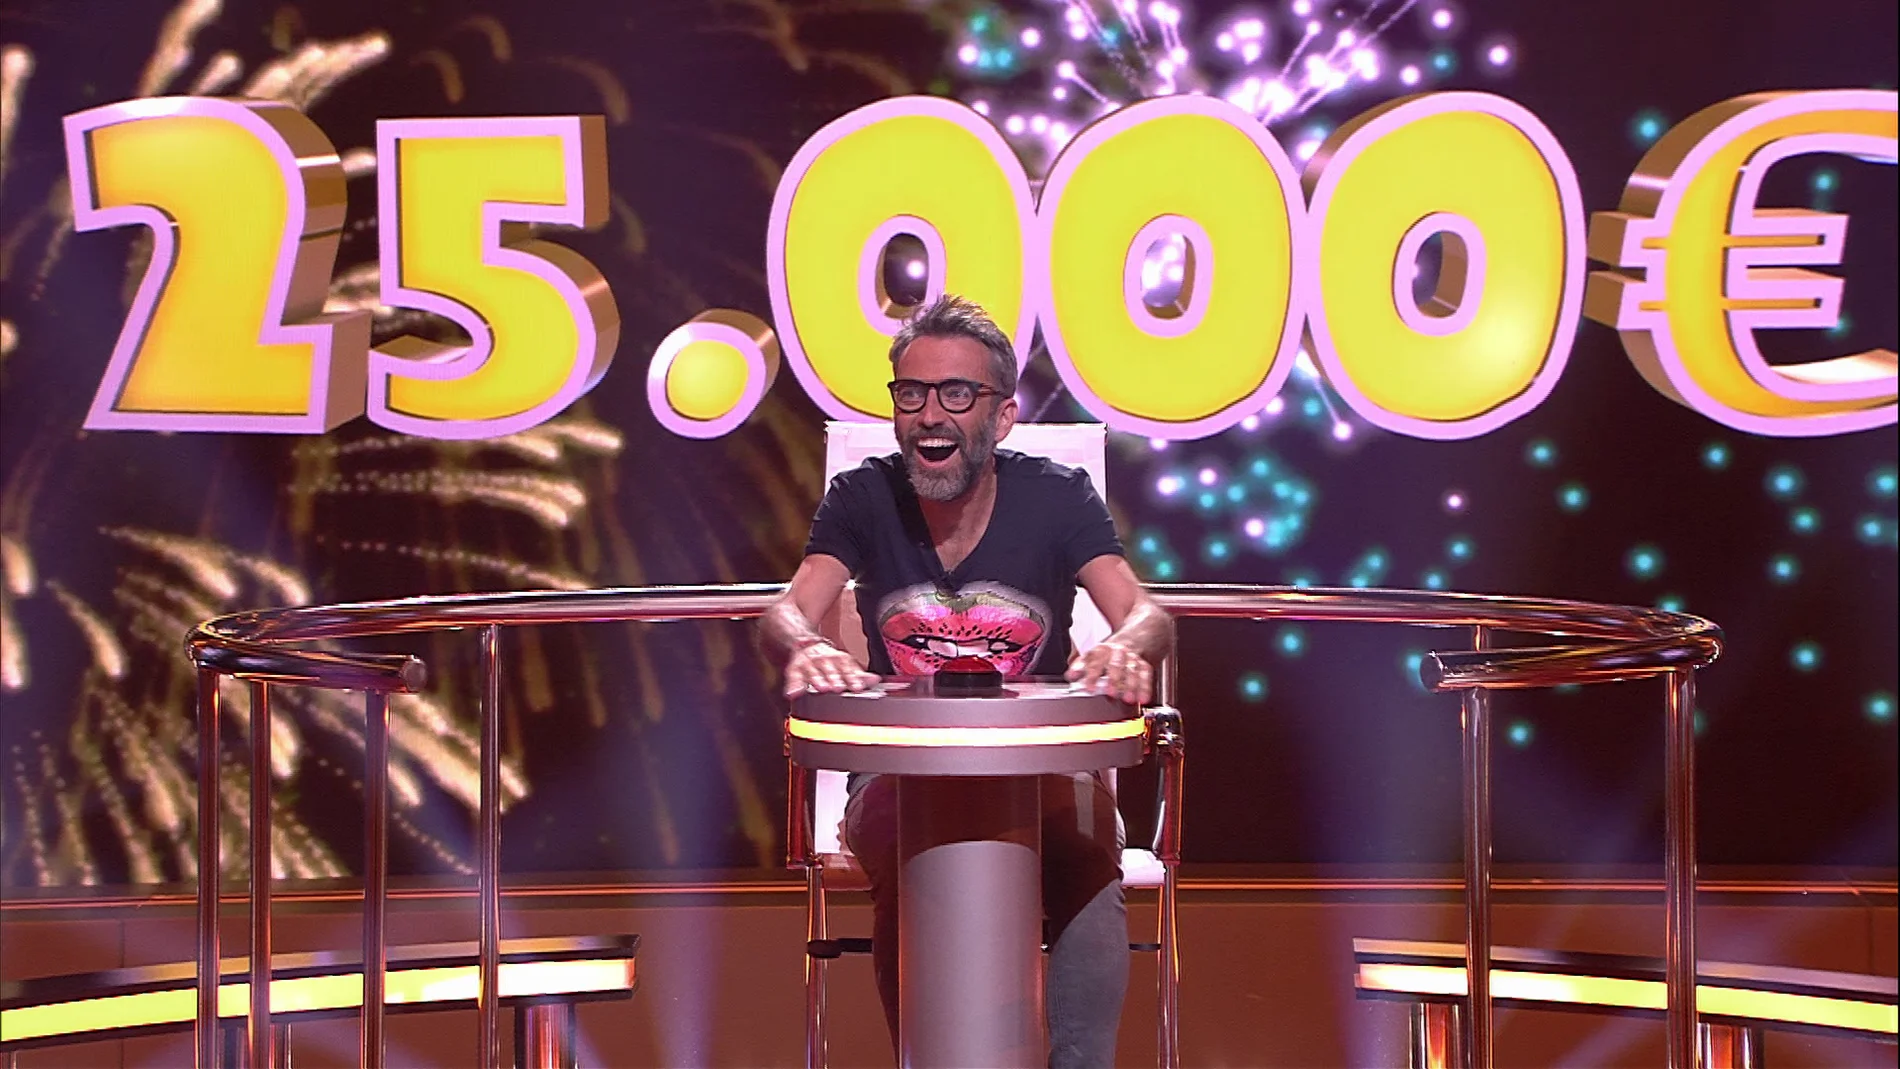 Vicenç gana 25.000 euros en ‘Juego de juegos’ gracias a los presentadores de televisión